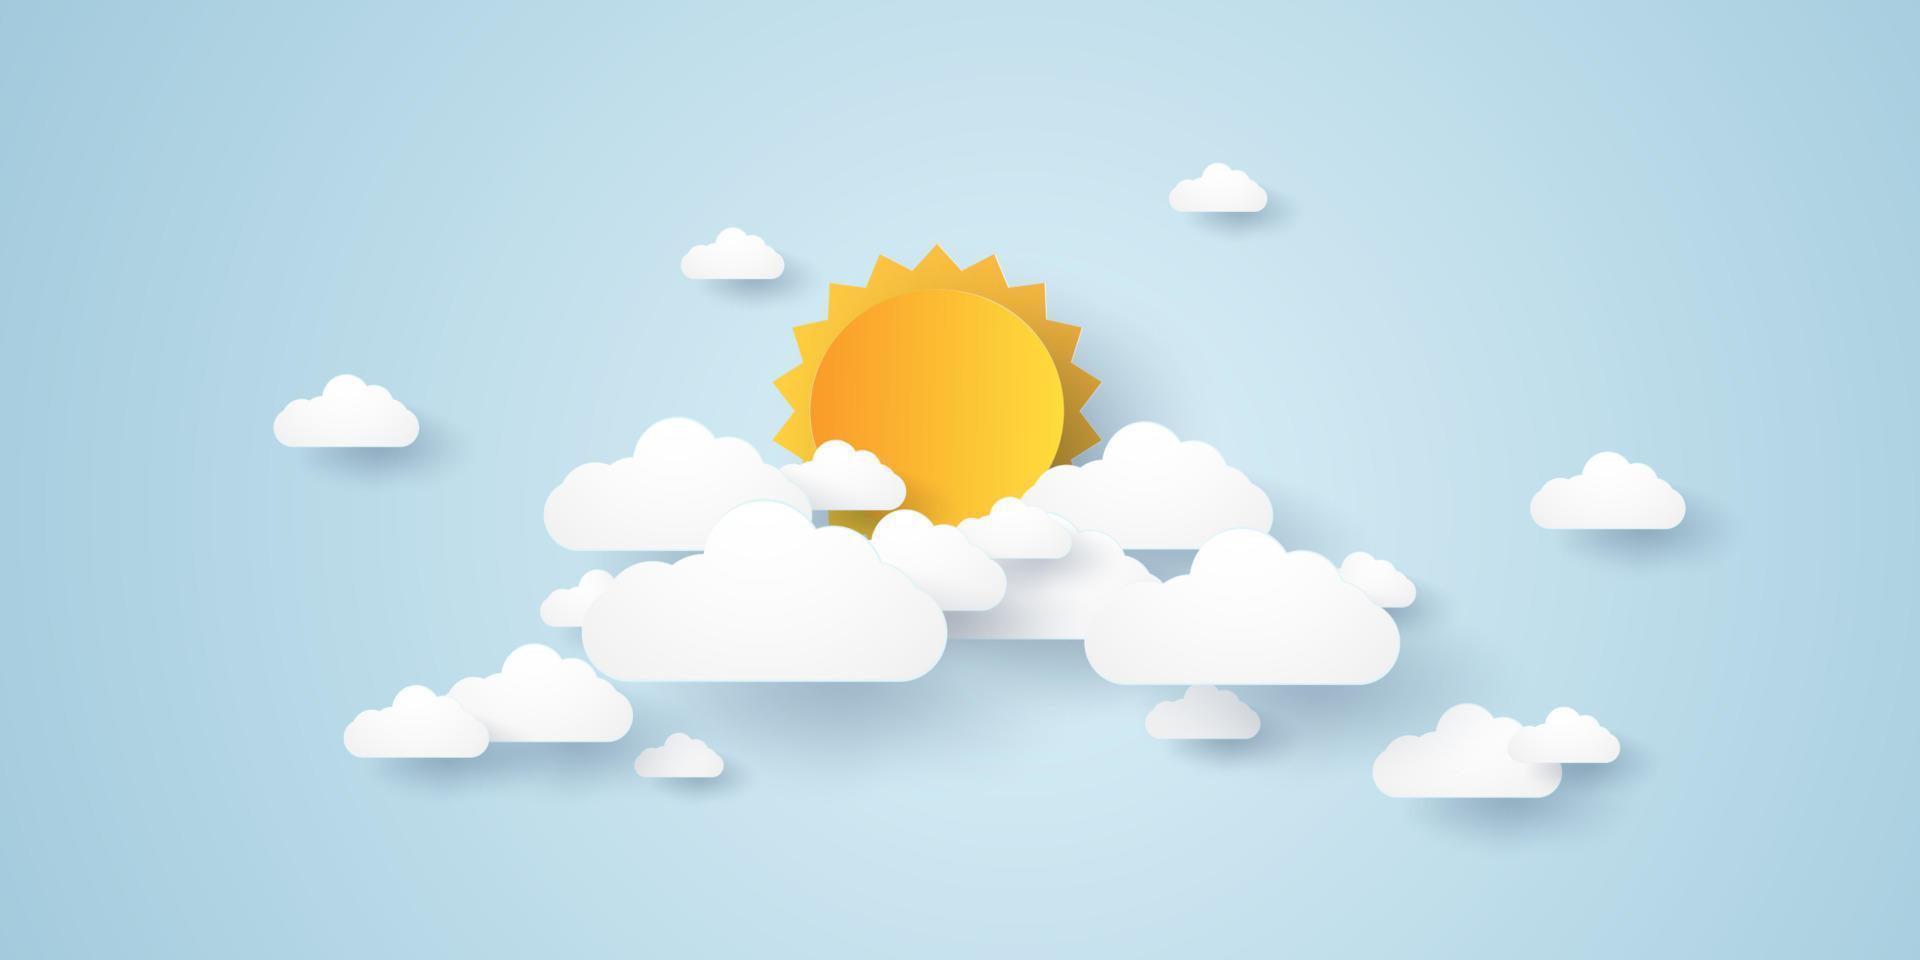 cloudscape, blauwe lucht met wolk en zon, papierkunststijl vector